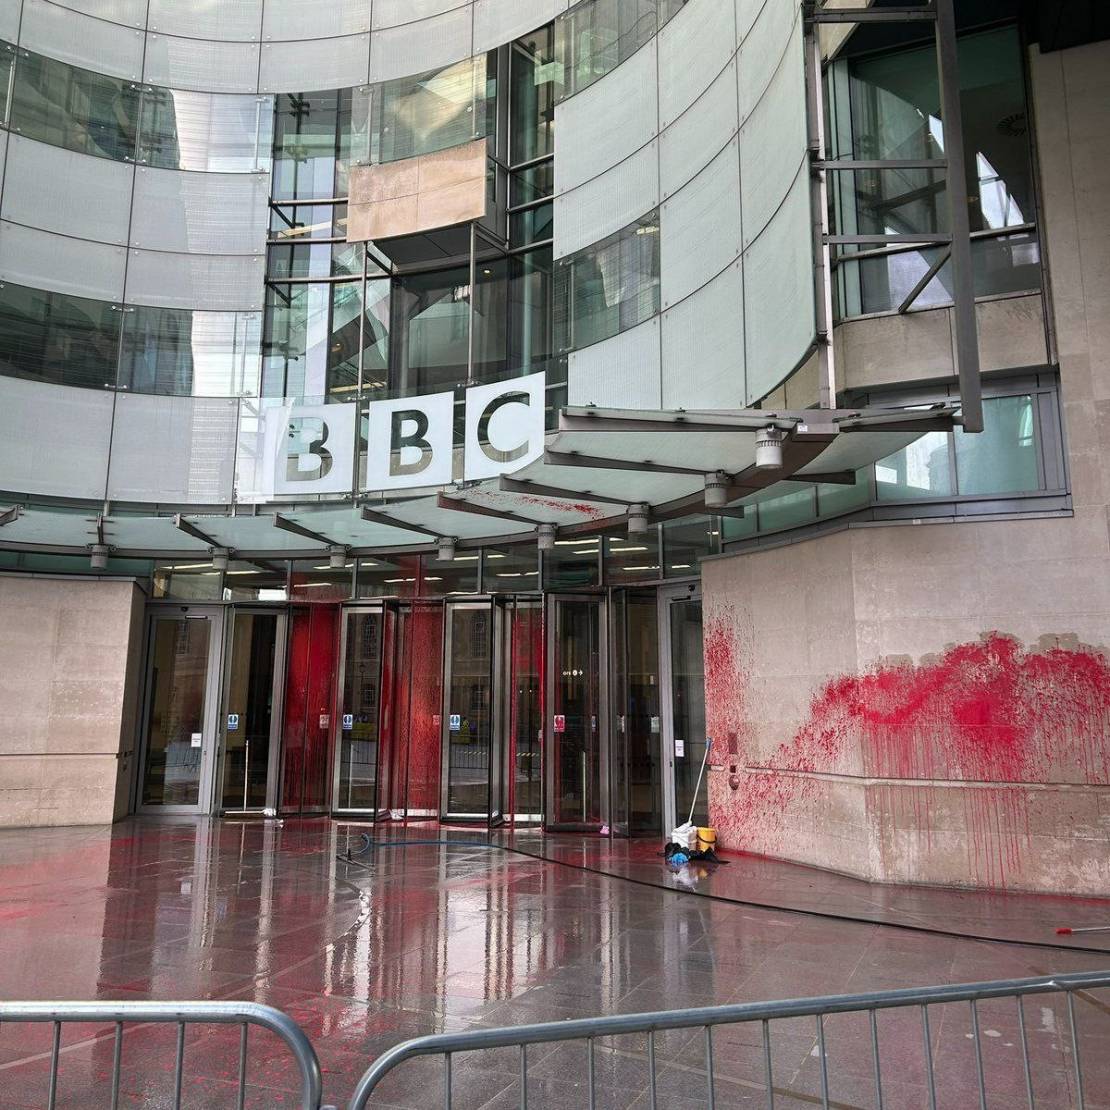 صحفيان يعلنان استقالتهما من BBC بعد تغطيتها المنحازة للاحتلال